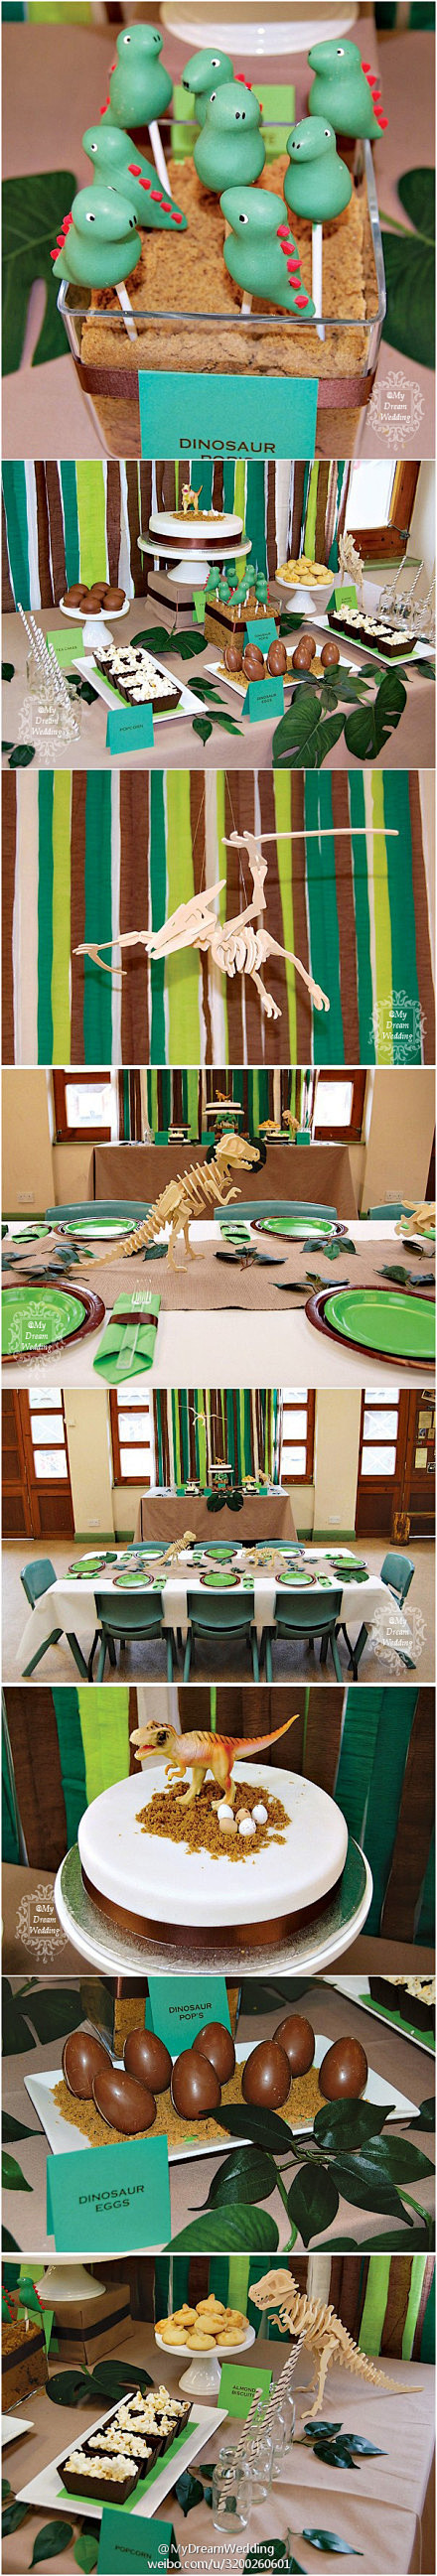 『宴会餐桌』小恐龙主题甜品台